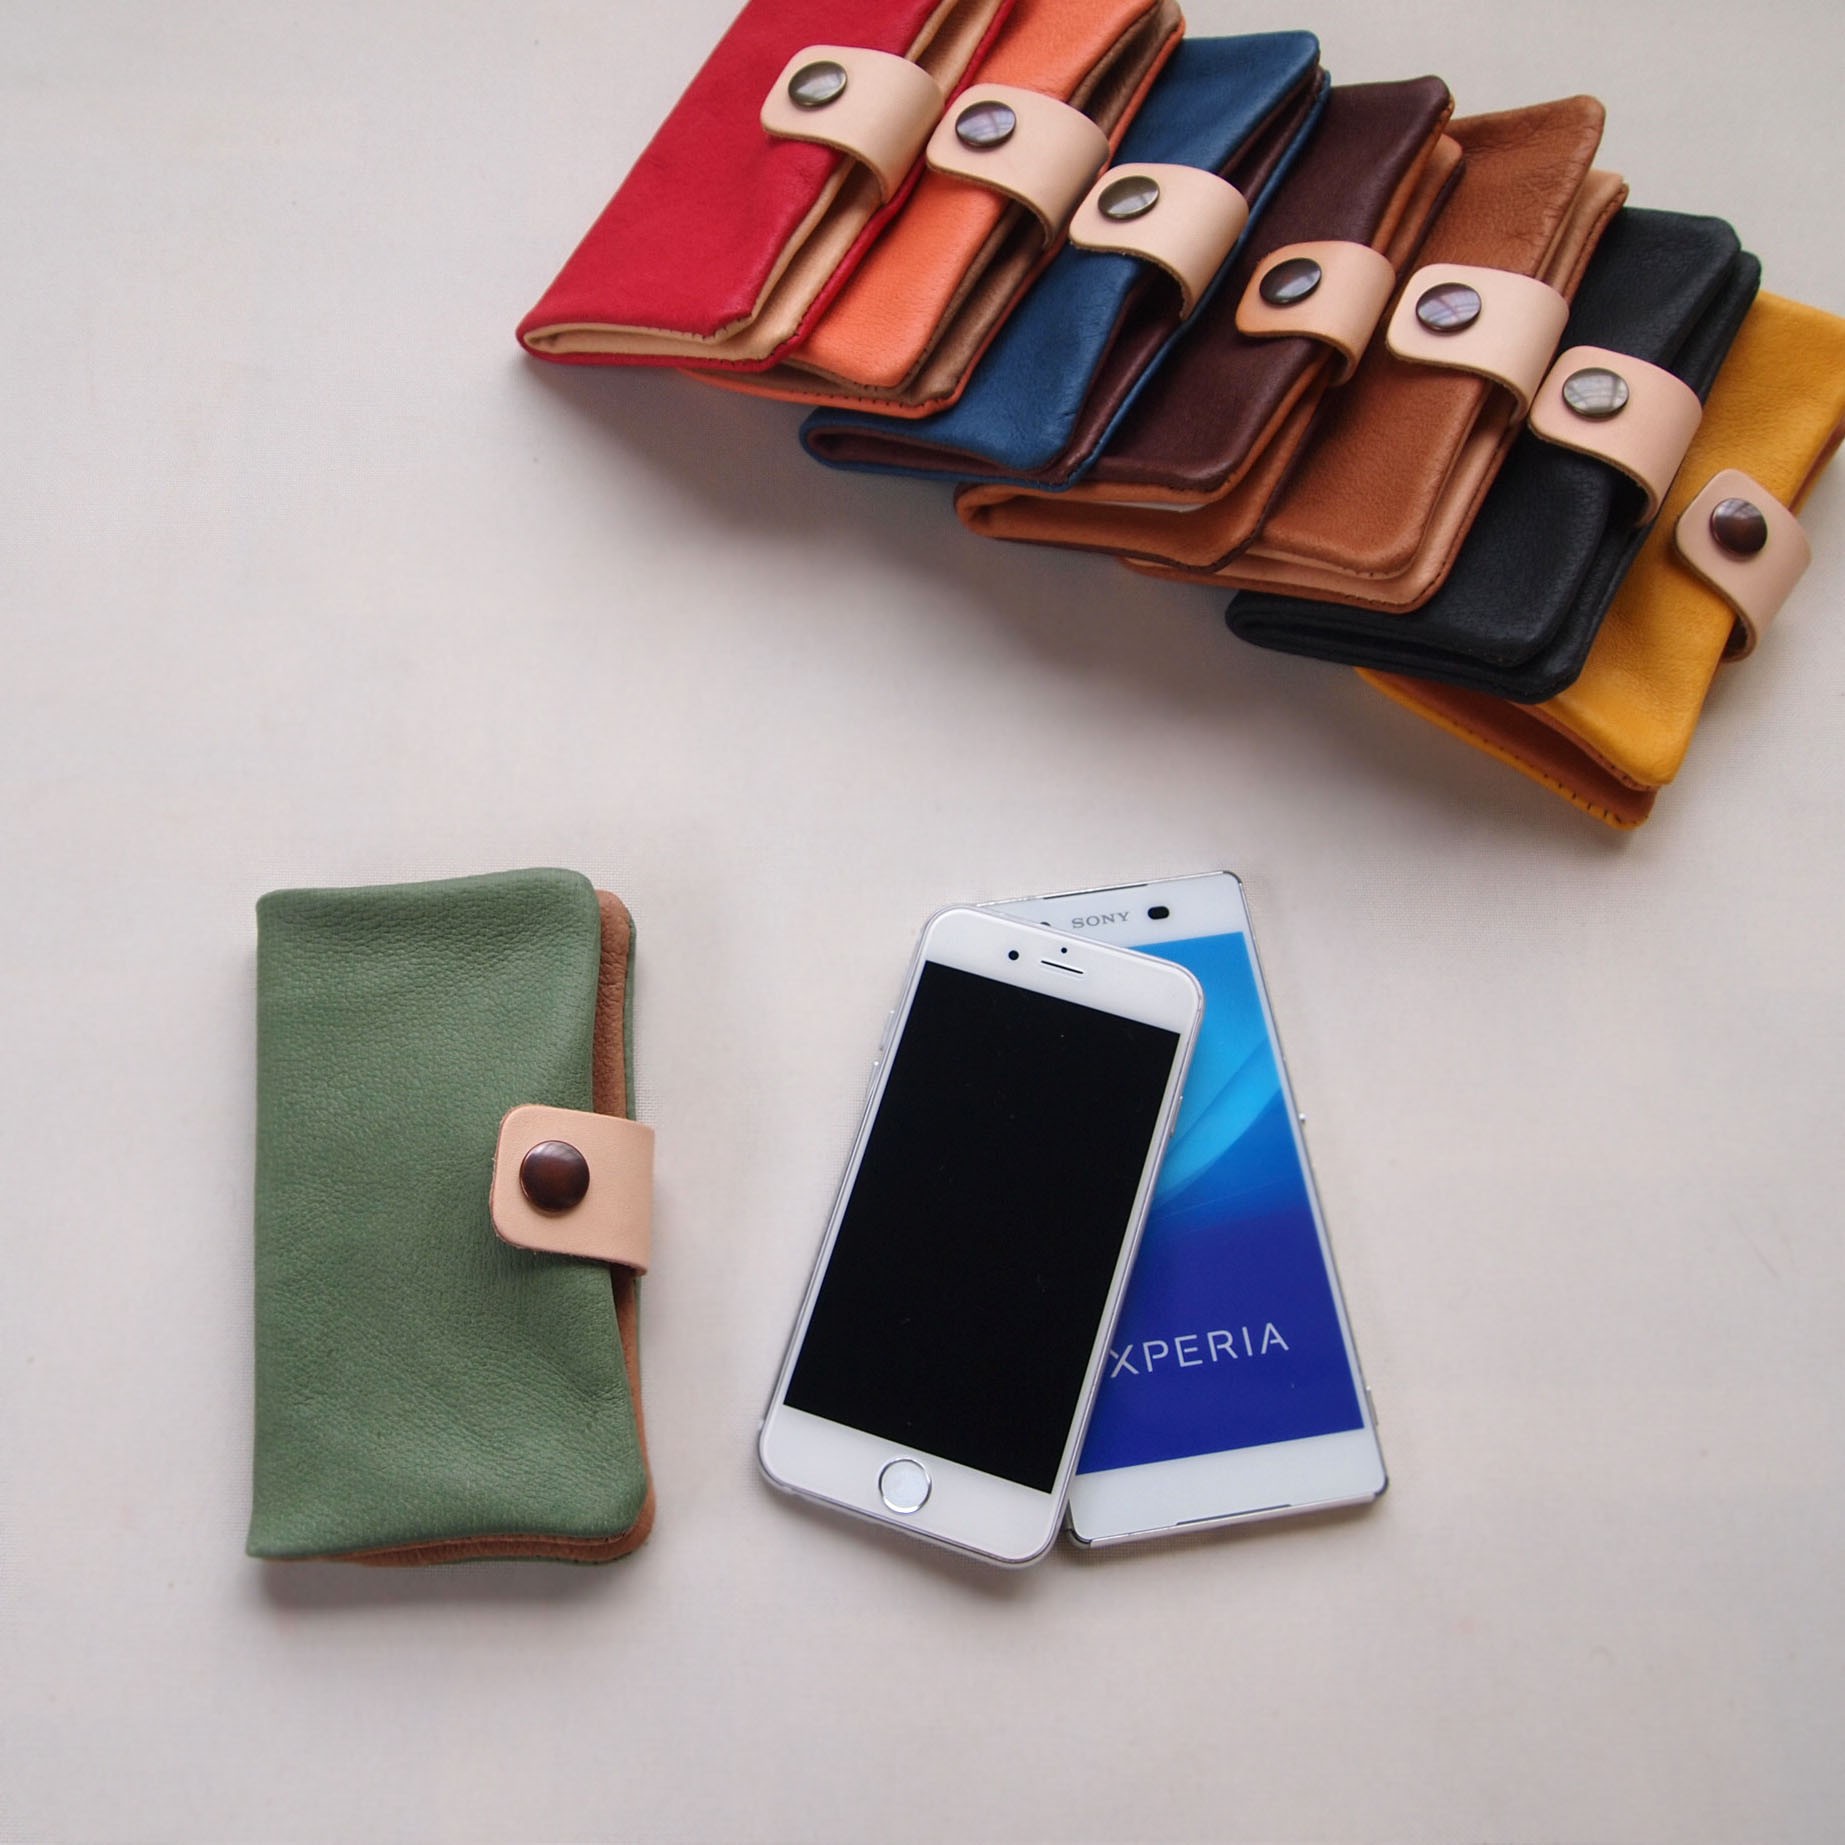 ぶた革 ｽﾏﾎｹｰｽ 緑 多機種対応 シンプルだけど個性的やわらかなスマホカバー手帳型 Iphone8 Xperia Iichi ハンドメイド クラフト作品 手仕事品の通販